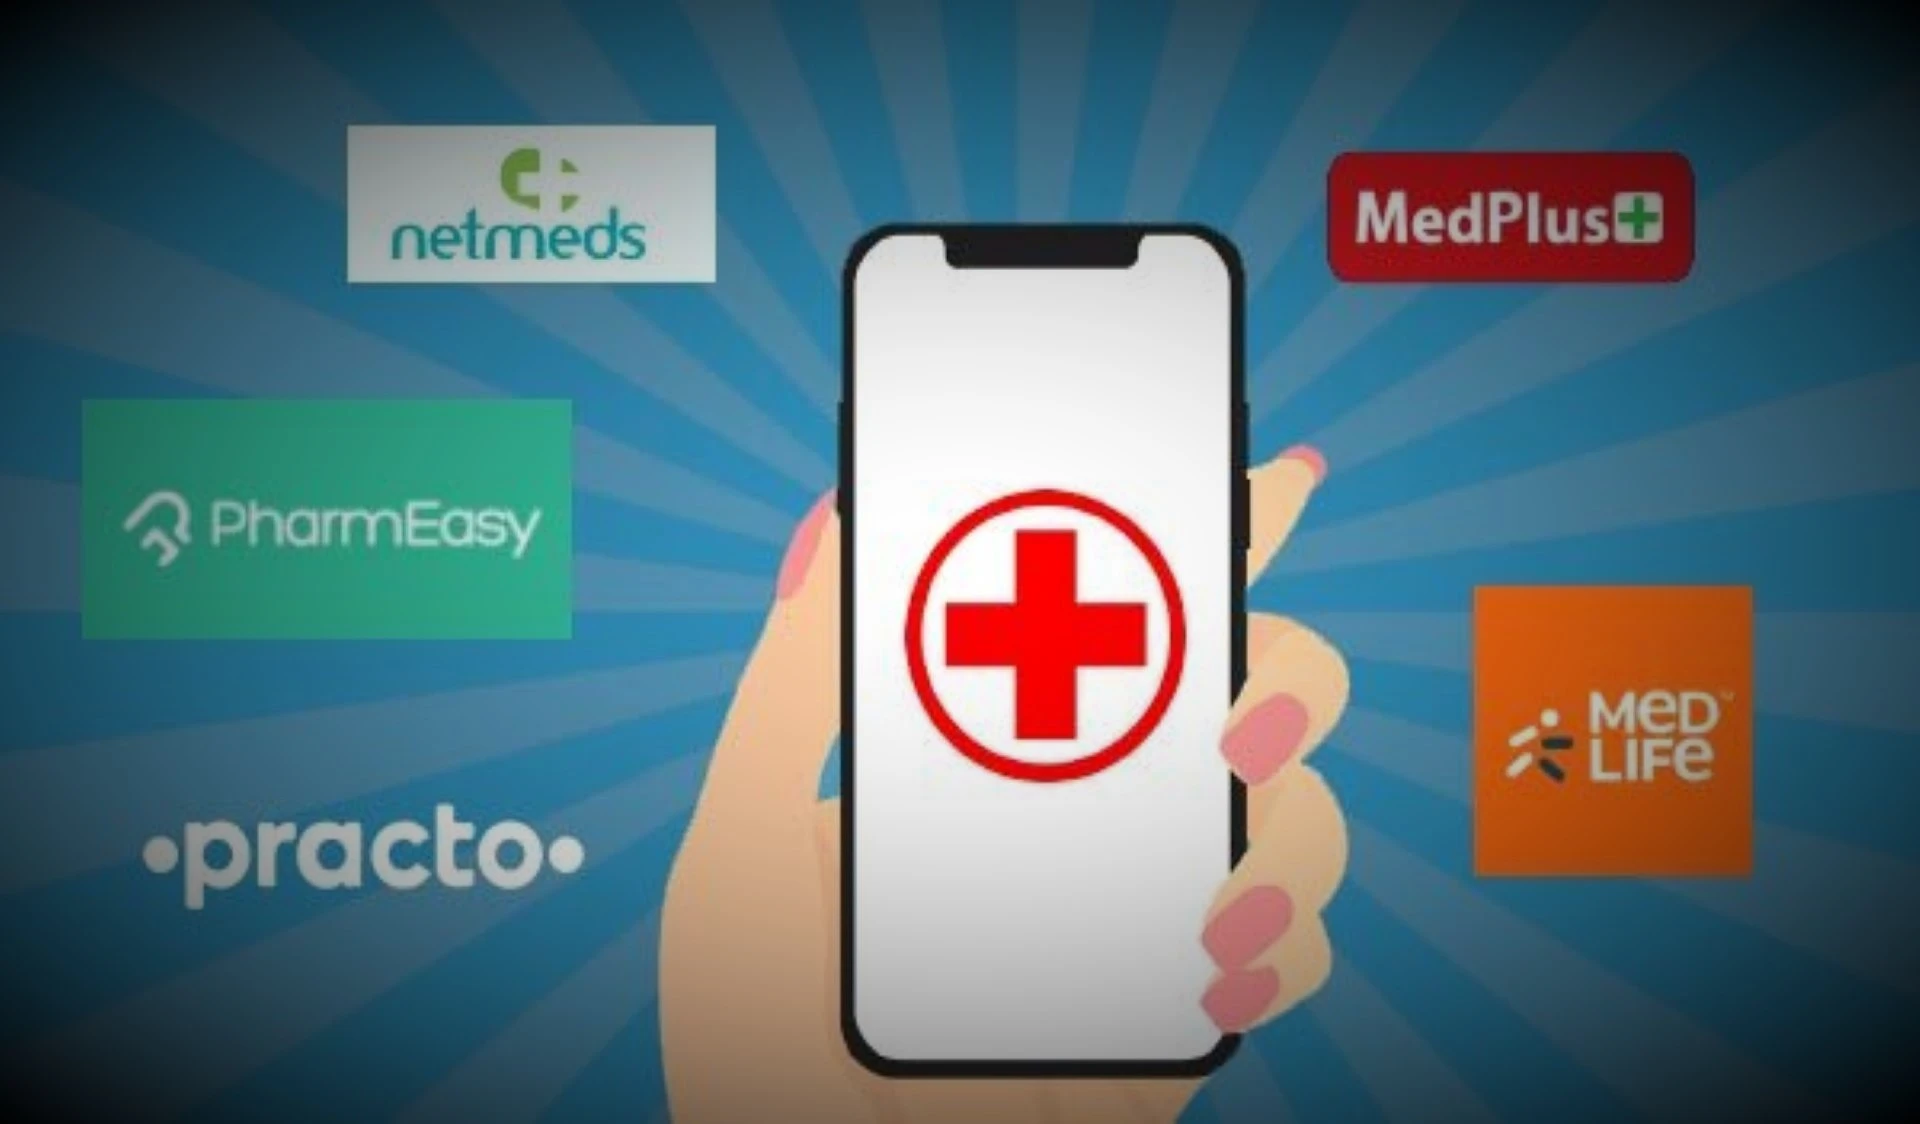 online medicine delivery app model3 like netmeds, pharmeasy, practo